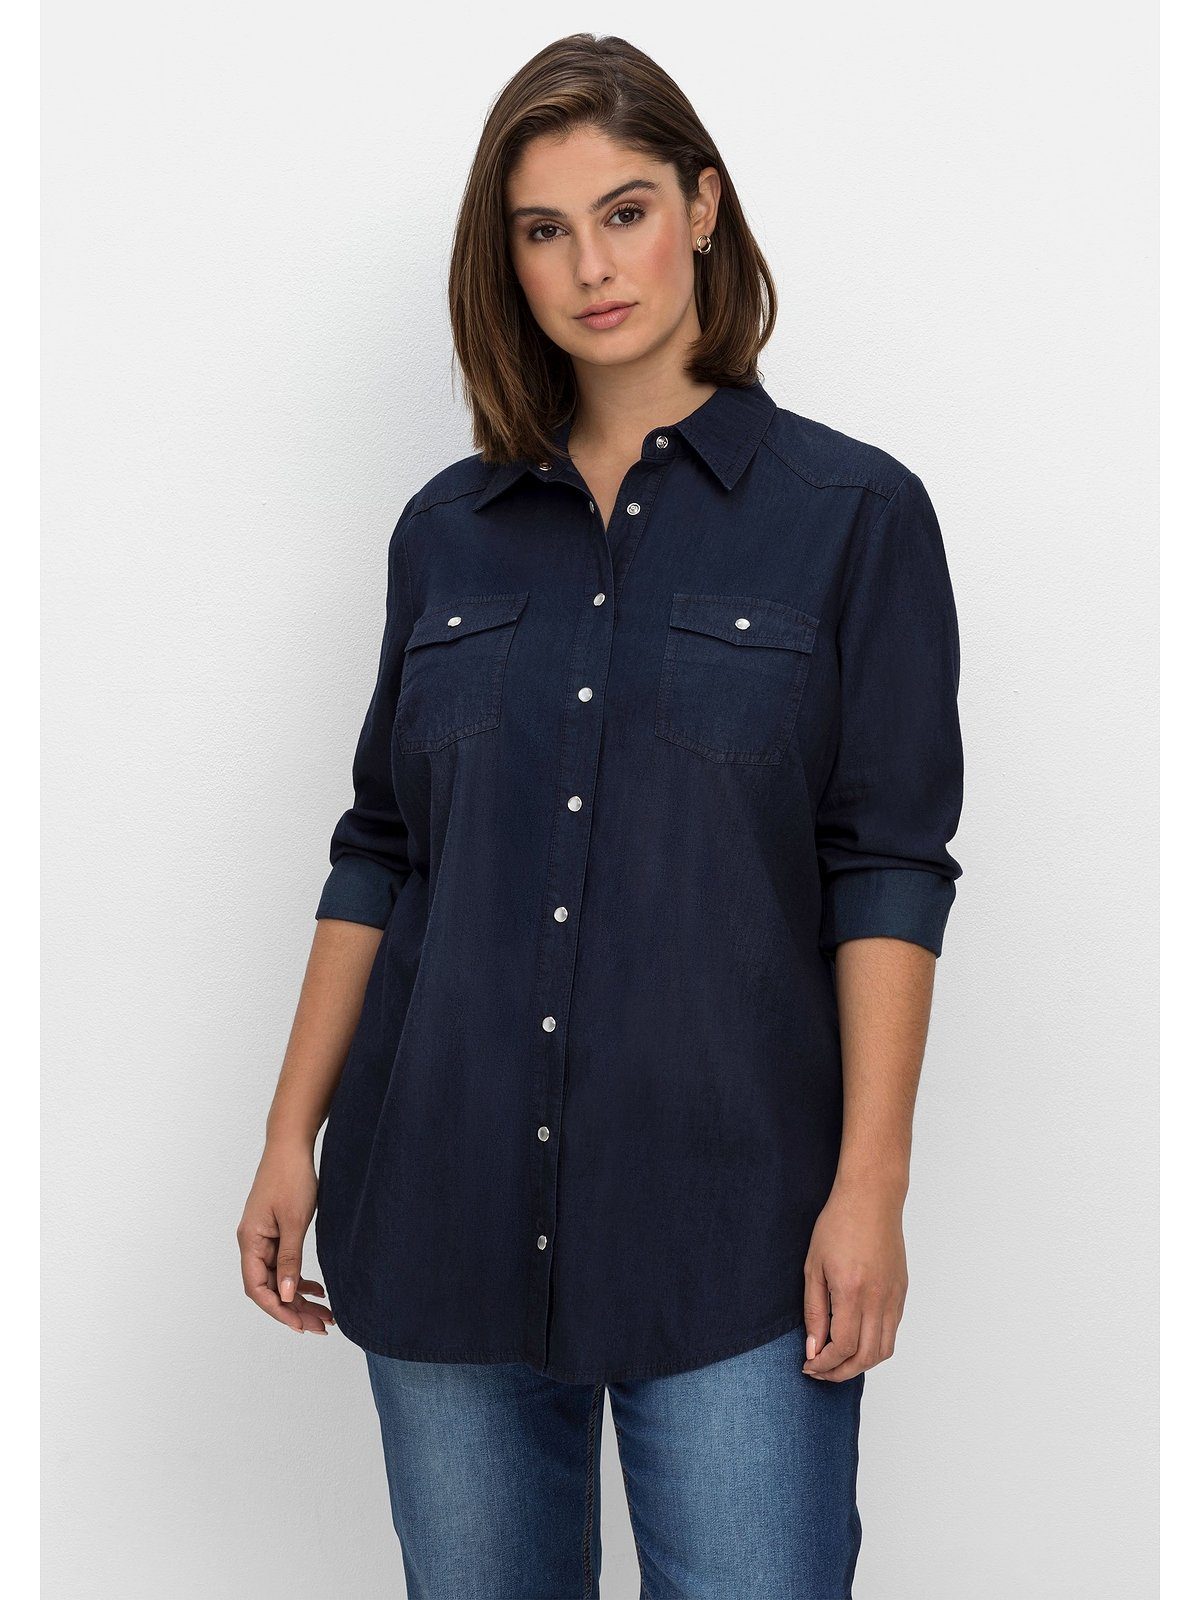 [Kostenloser Versand nur für begrenzte Zeit] Sheego Jeansbluse und dark mit Große blue Größen Brusttaschen Denim Knopfleiste